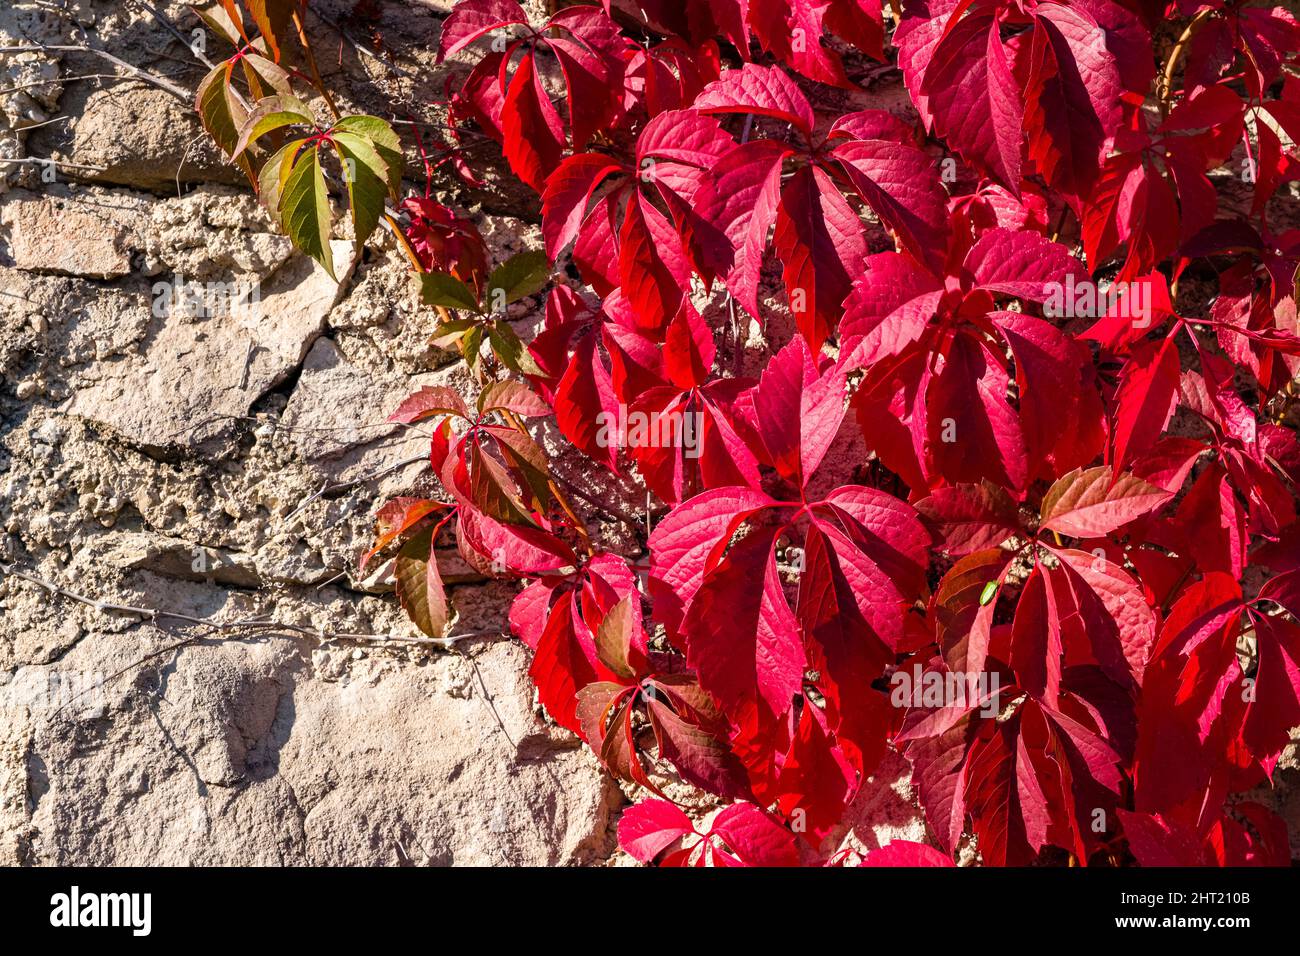 Feuilles rouges de la Virginie rampante (Parthenocissus quinquefolia), grimpant sur un mur de roche, en automne. Banque D'Images